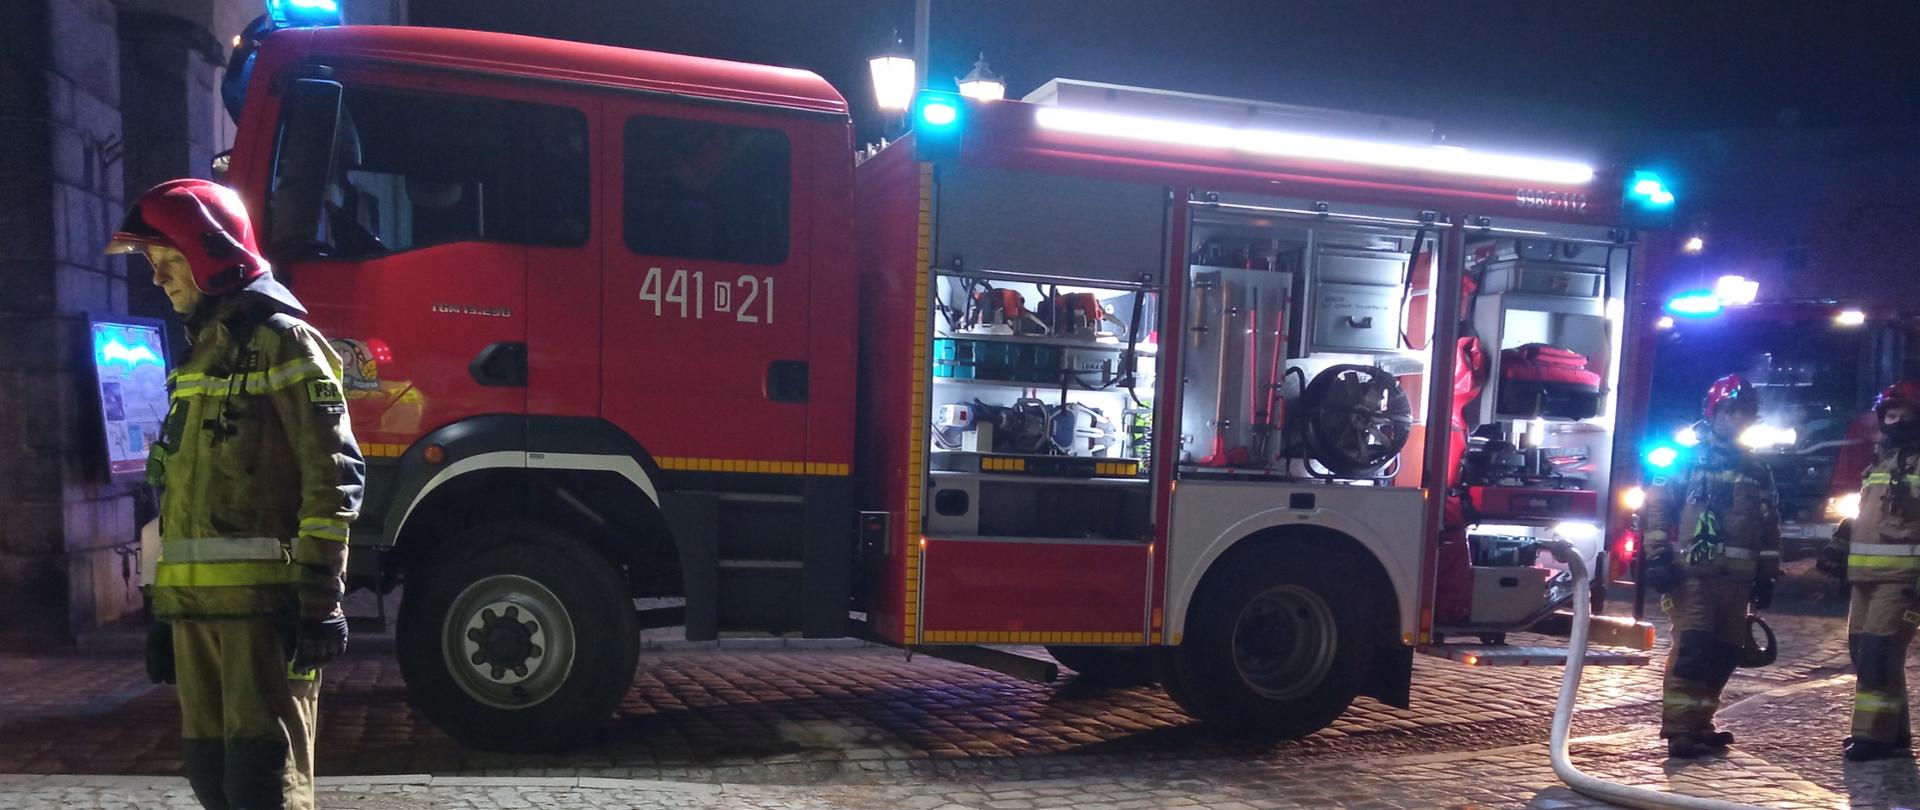 Obraz przedstawia samochód pożarniczy z włączonymi sygnałami świetlnymi. Obok strażacy w umundurowaniu specjalnym. Pora nocna.